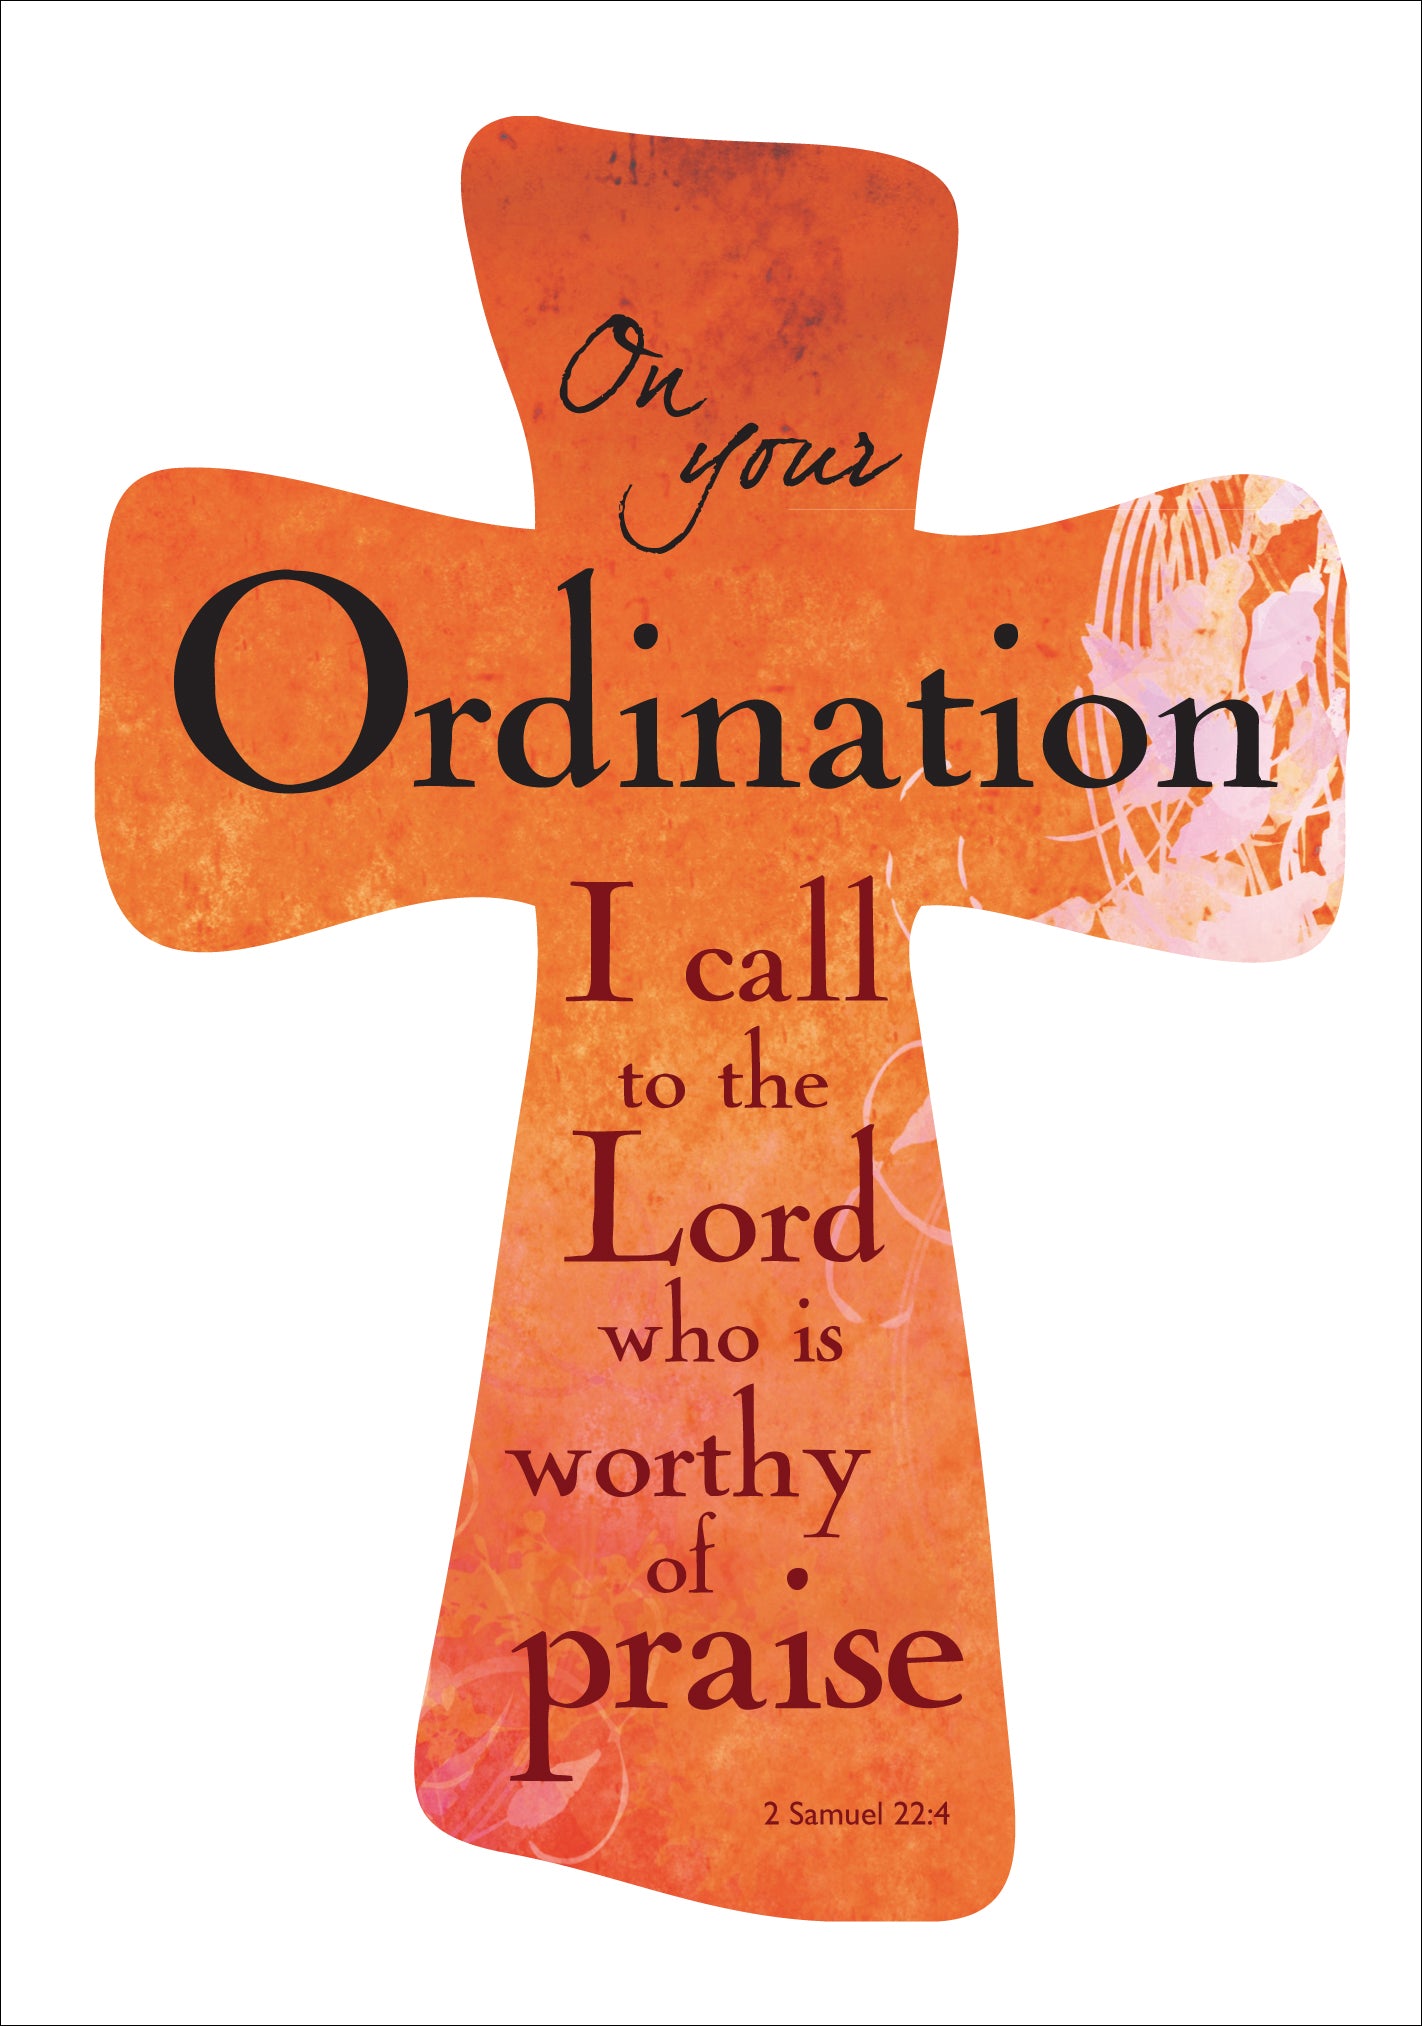 Ordination - Std Card GlossOrdination - Std Card Gloss